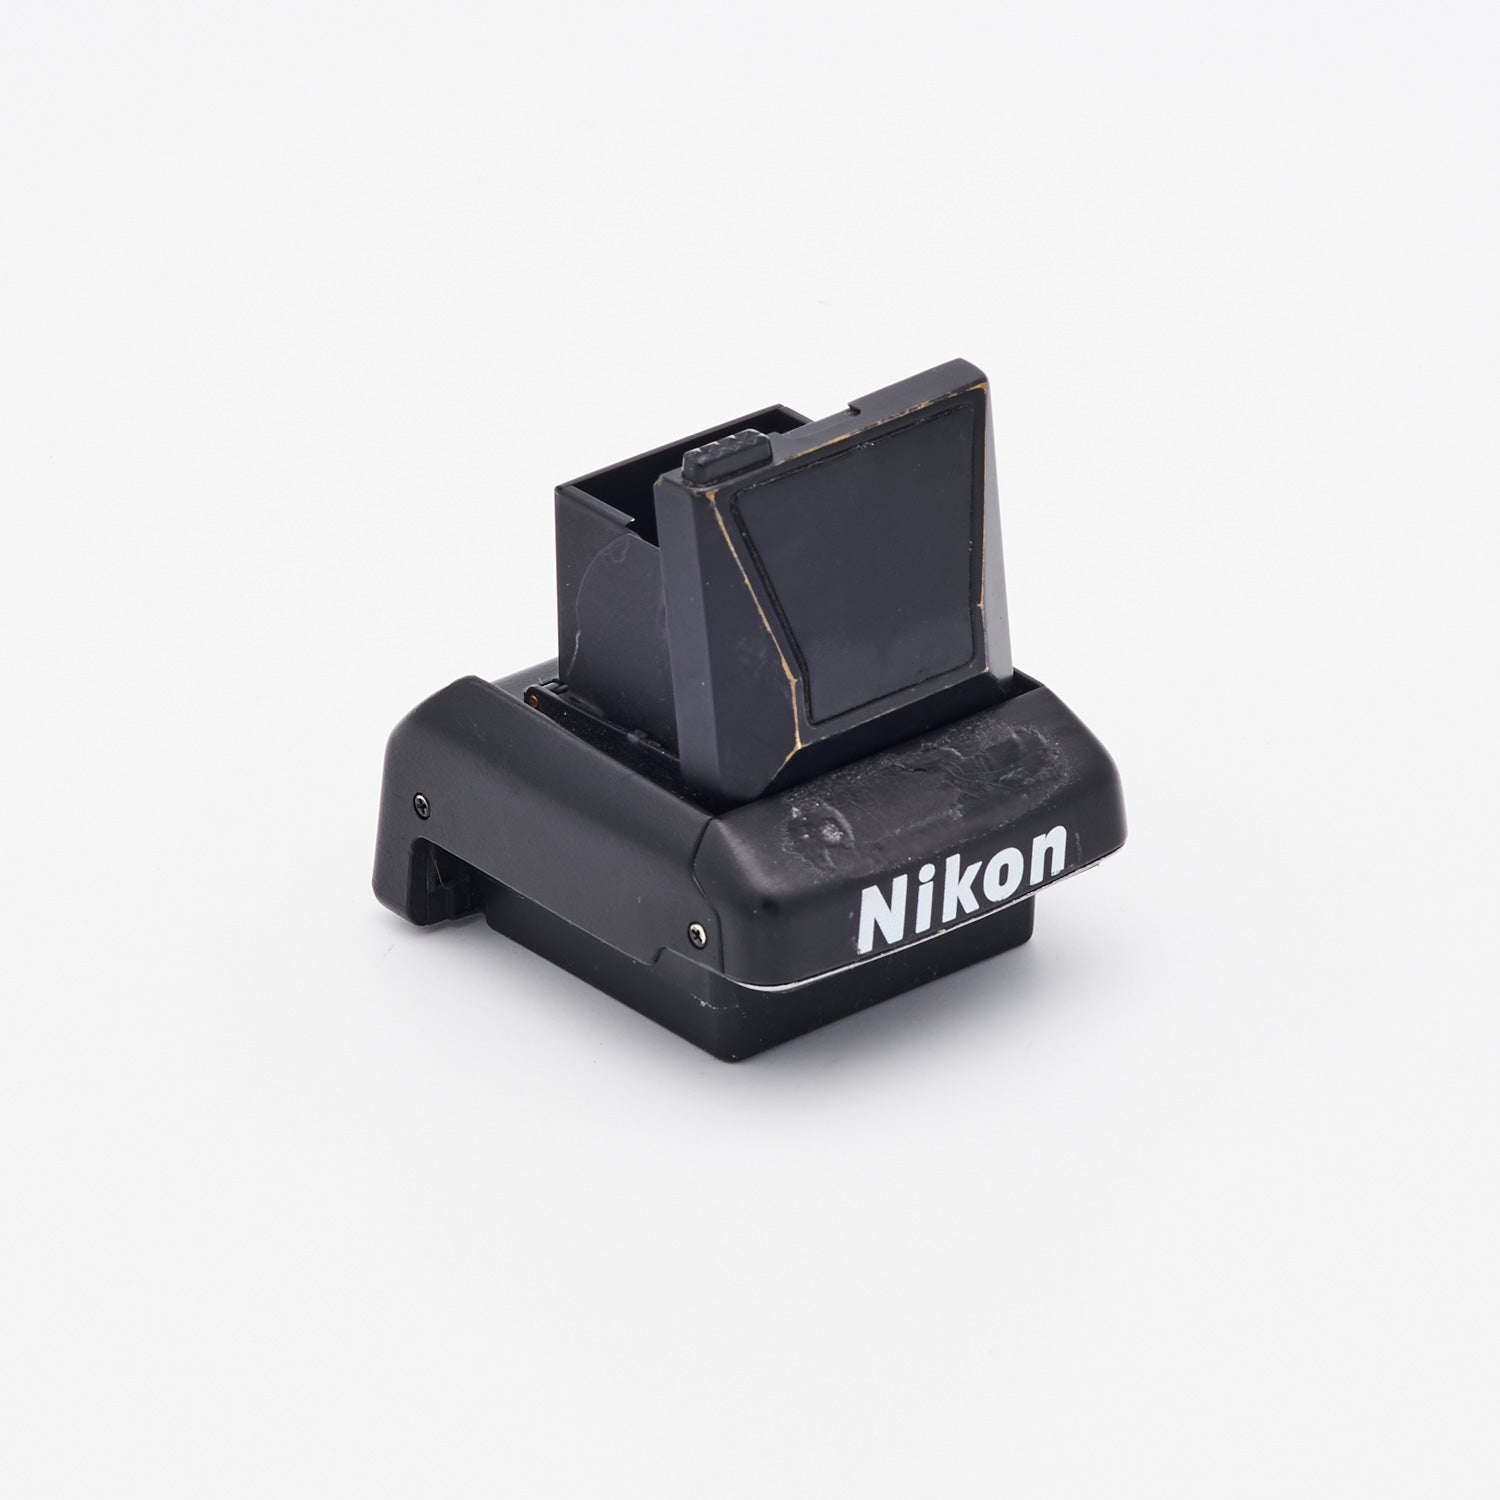 Nikon DW-30 Lichtschachtsucher (int. S/N 0149)